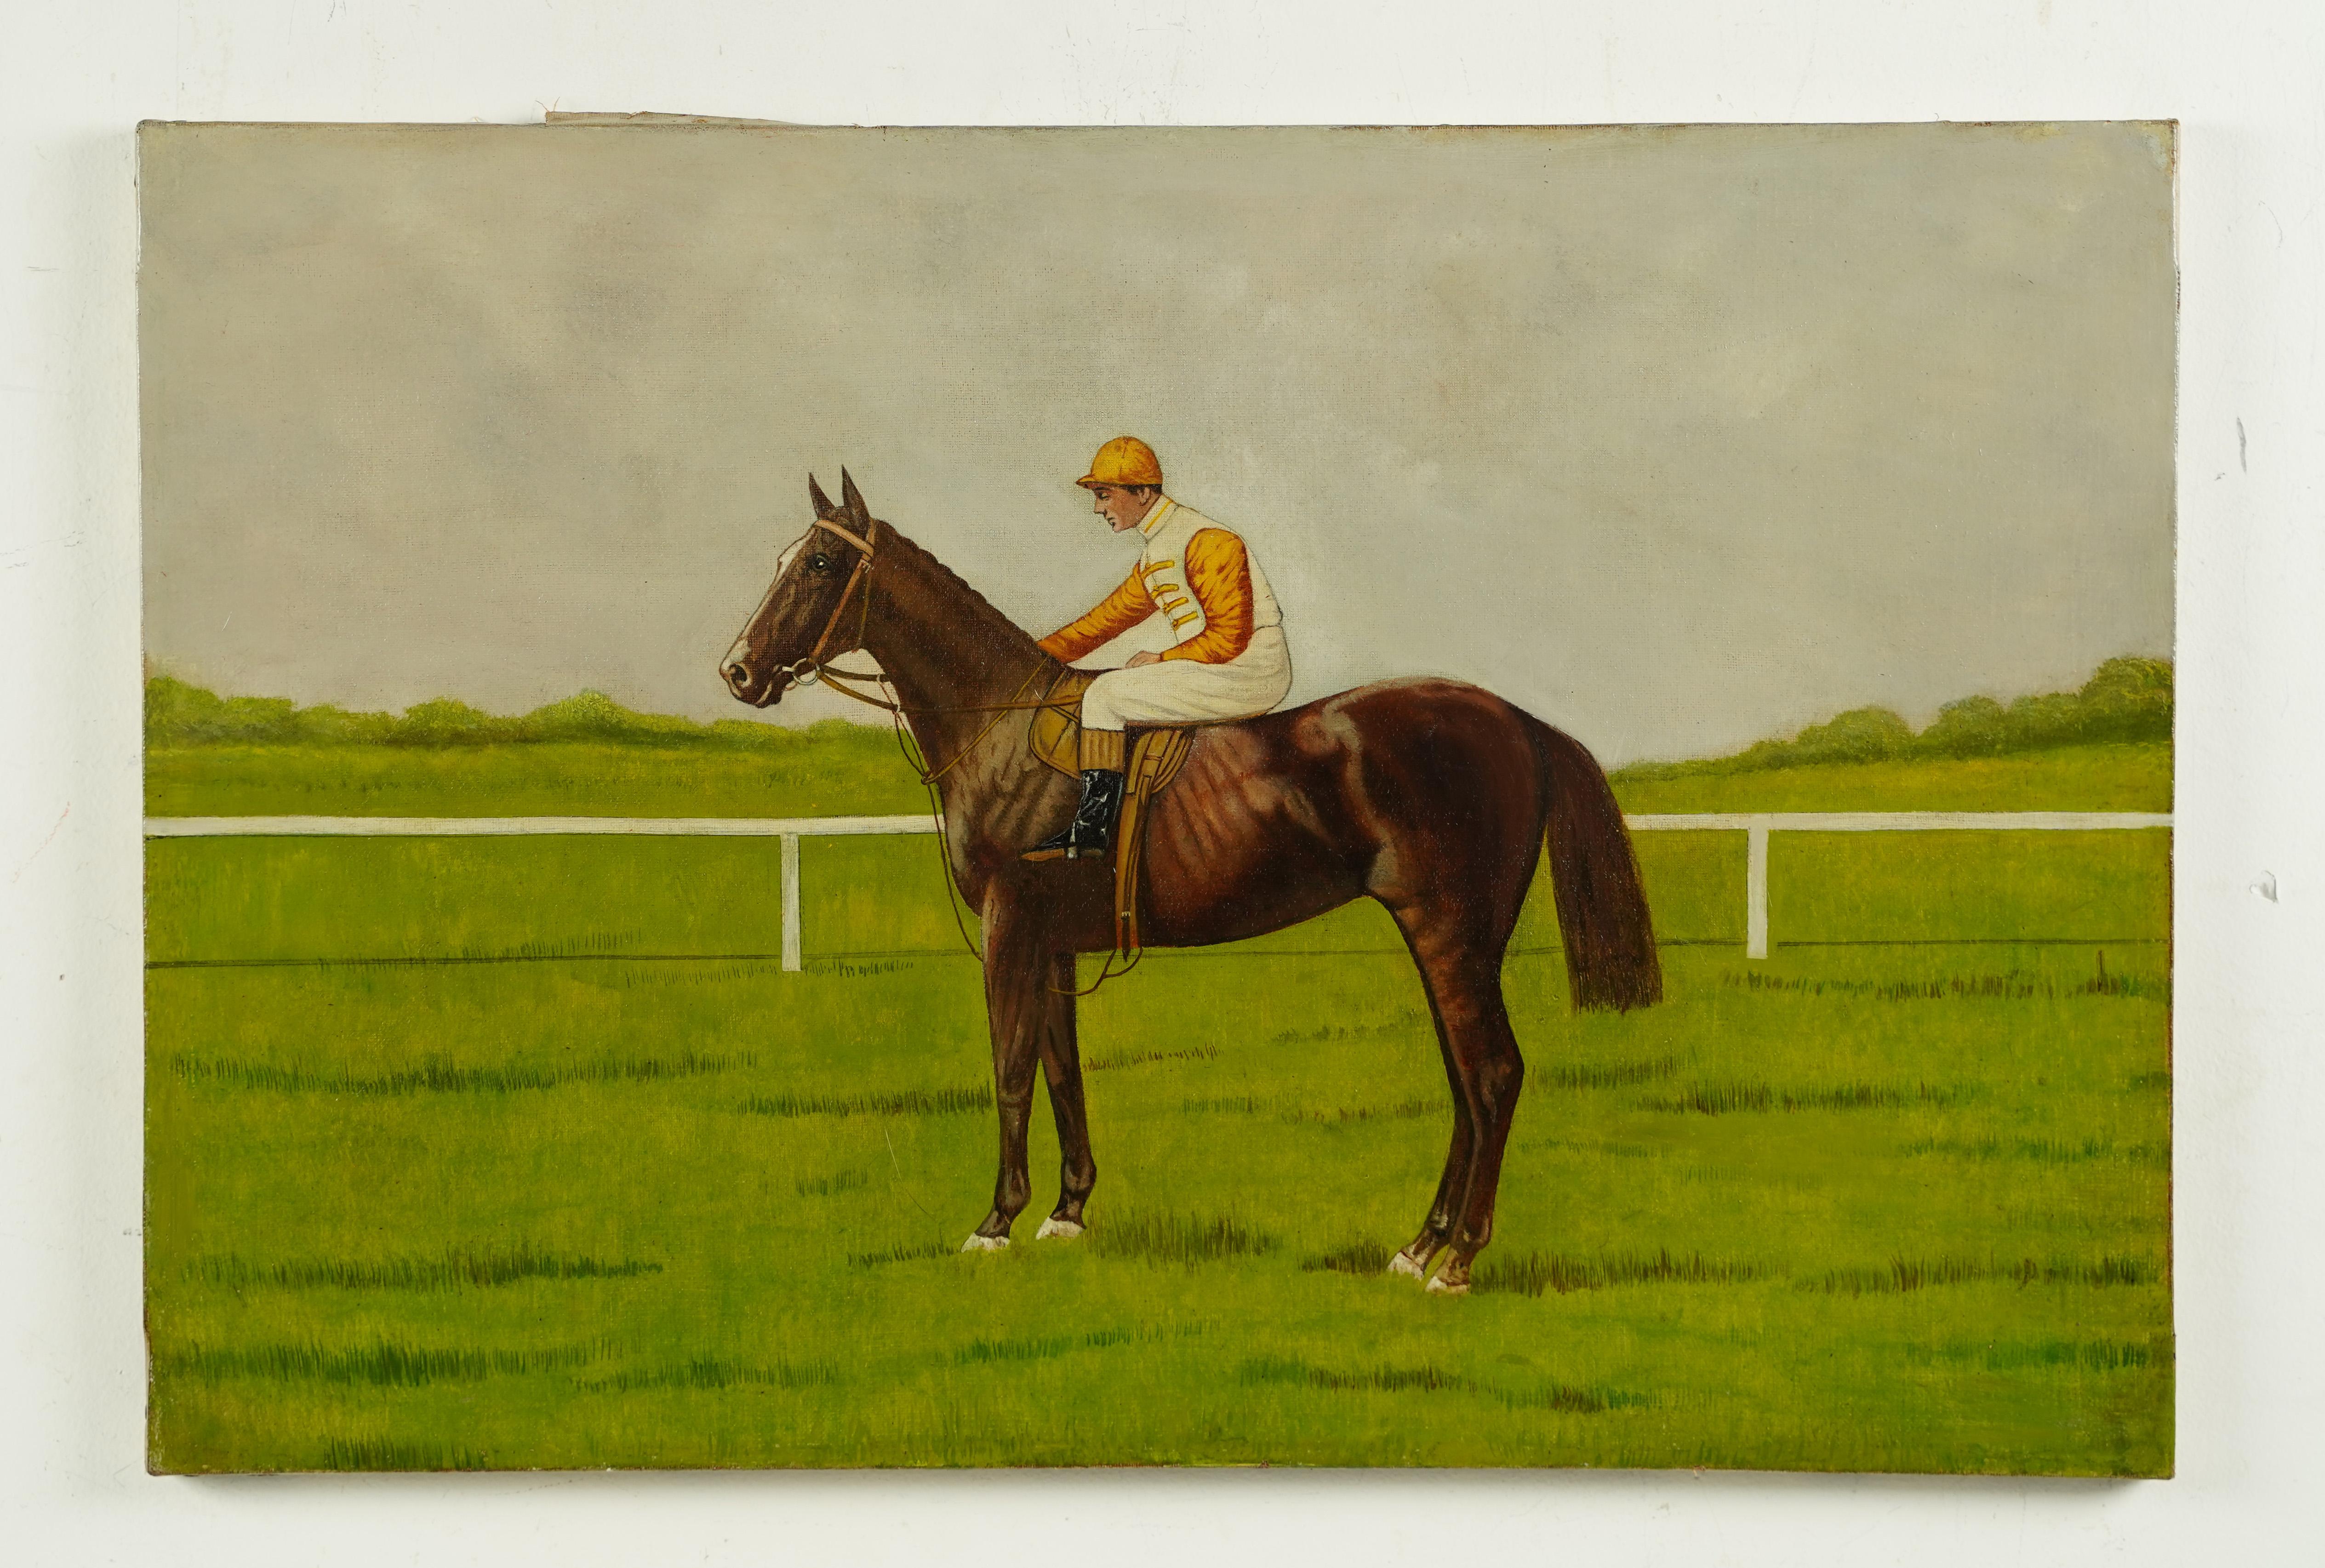 Antique American School Horse Race Portrait Equine Landscape Oil Painting 1